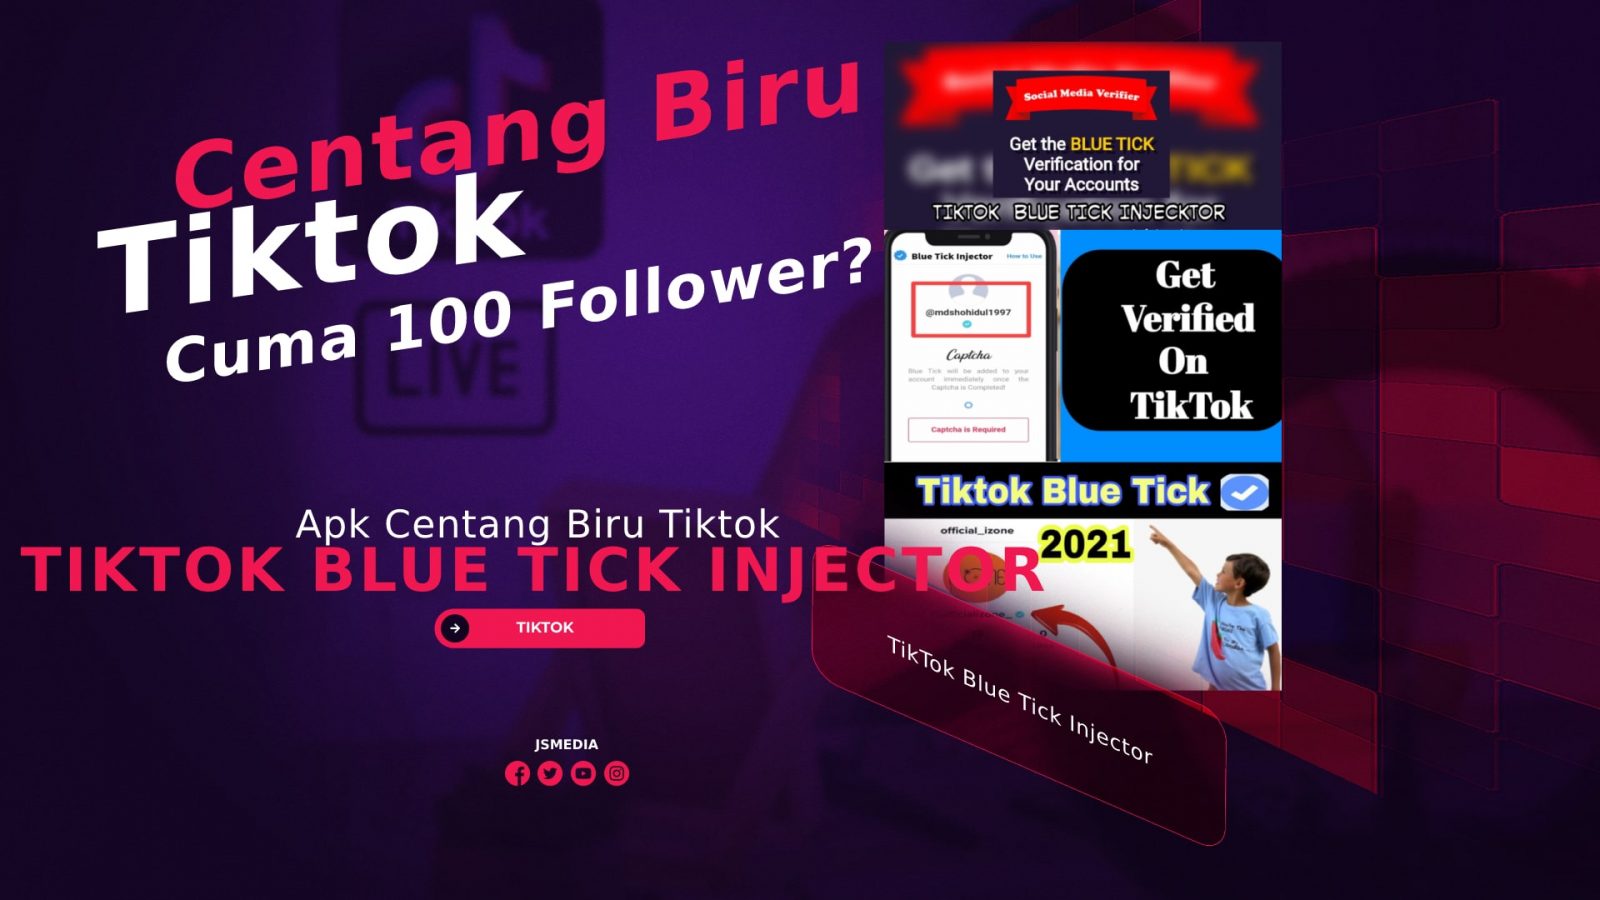 TikTok Blue Tick Injector Apk, Dapat Centang Biru Tiktok dengan Mudah?